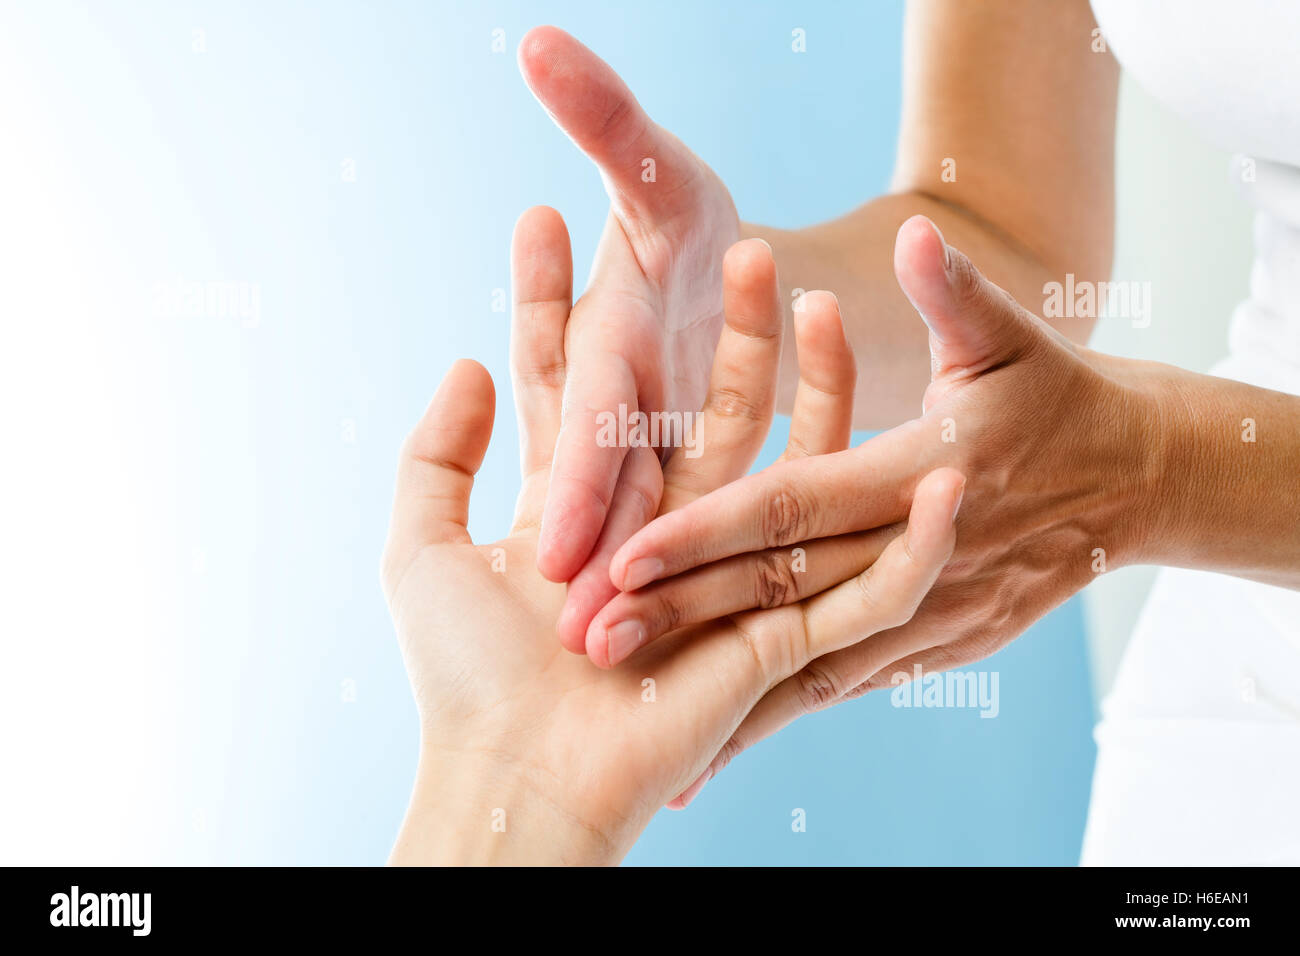 Makro Nahaufnahme der Hände des Therapeuten heilende Massage auf der weiblichen Seite zu tun. Stockfoto